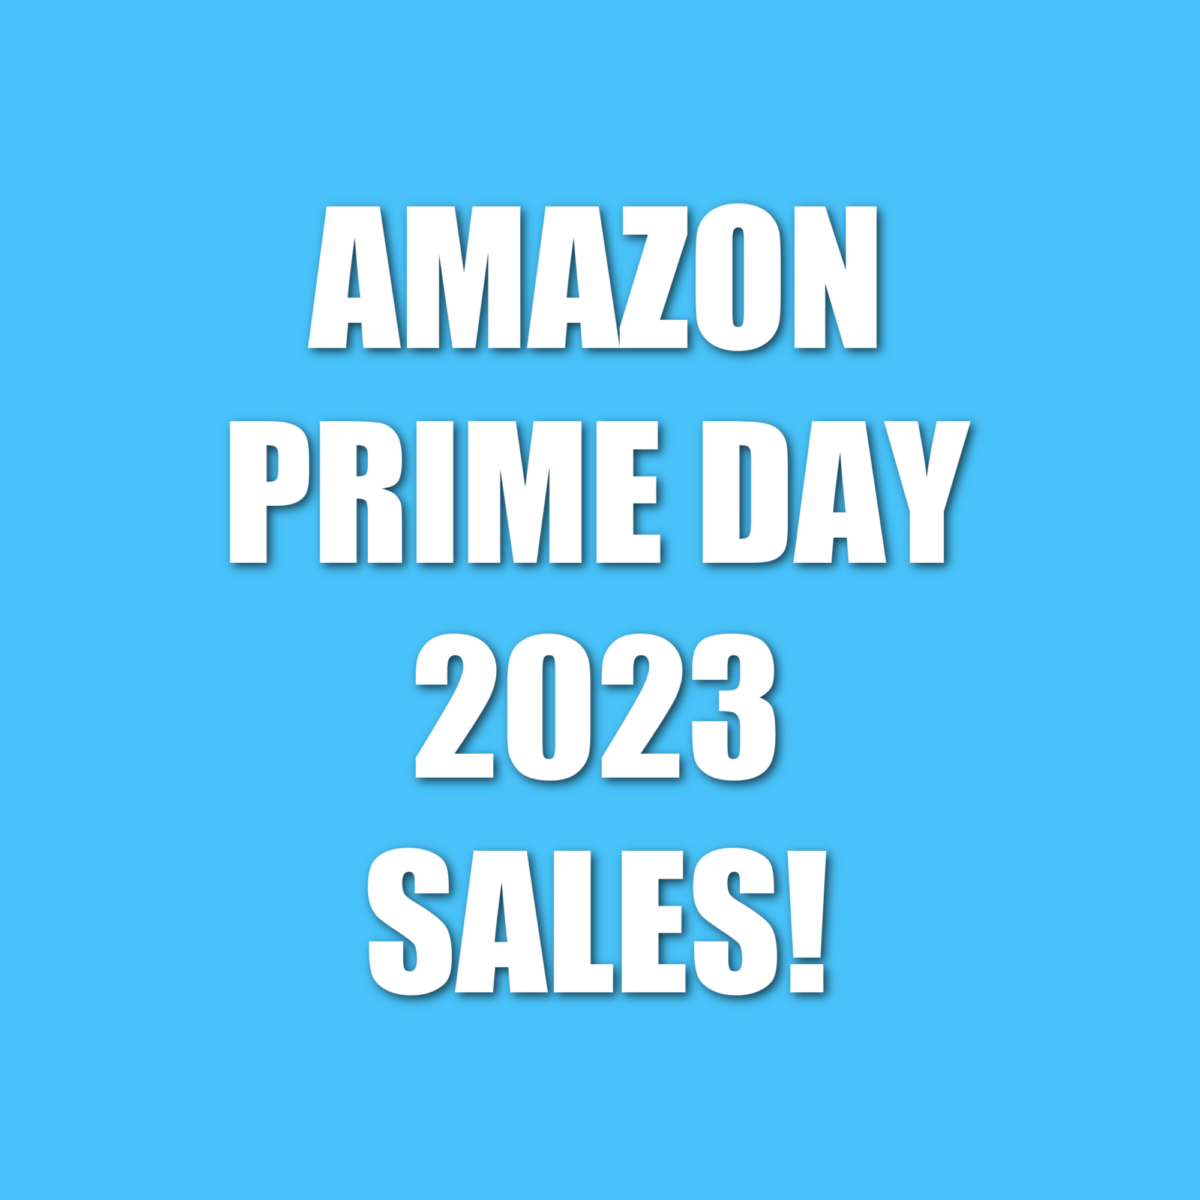 Amazon Prime Day 2023 Sales!